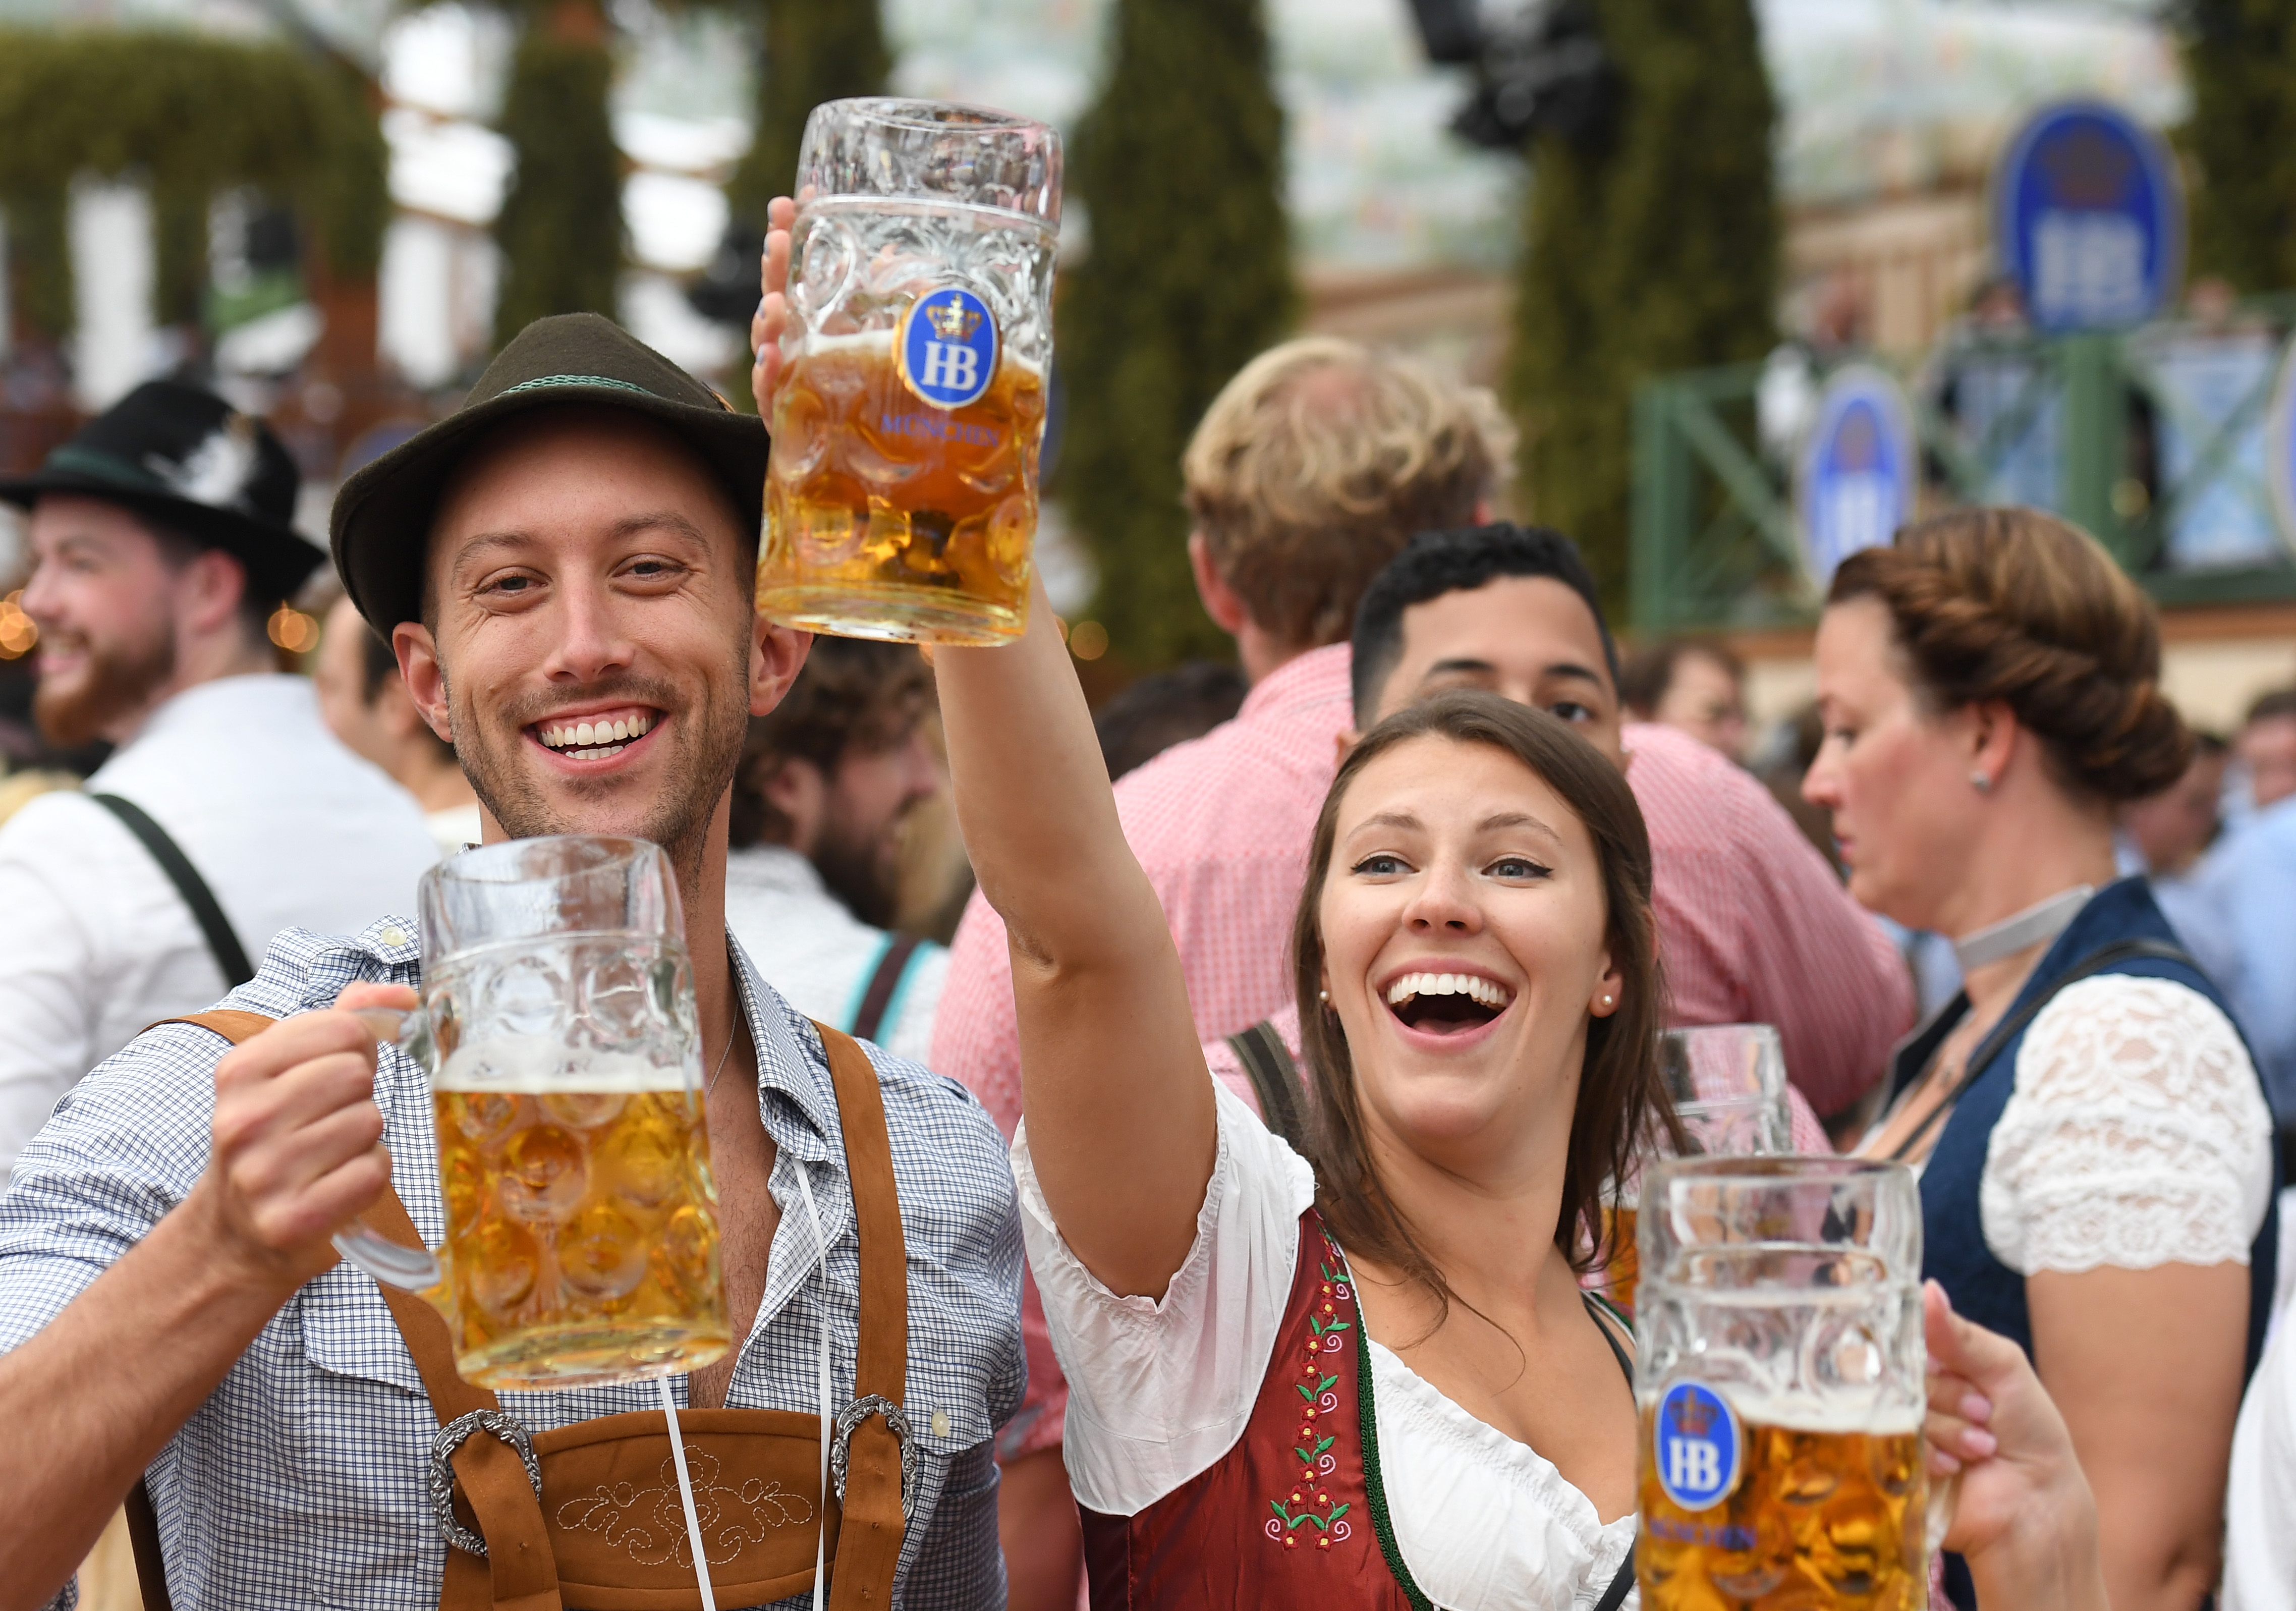 Oktoberfest beer festival kicks off in Munich.